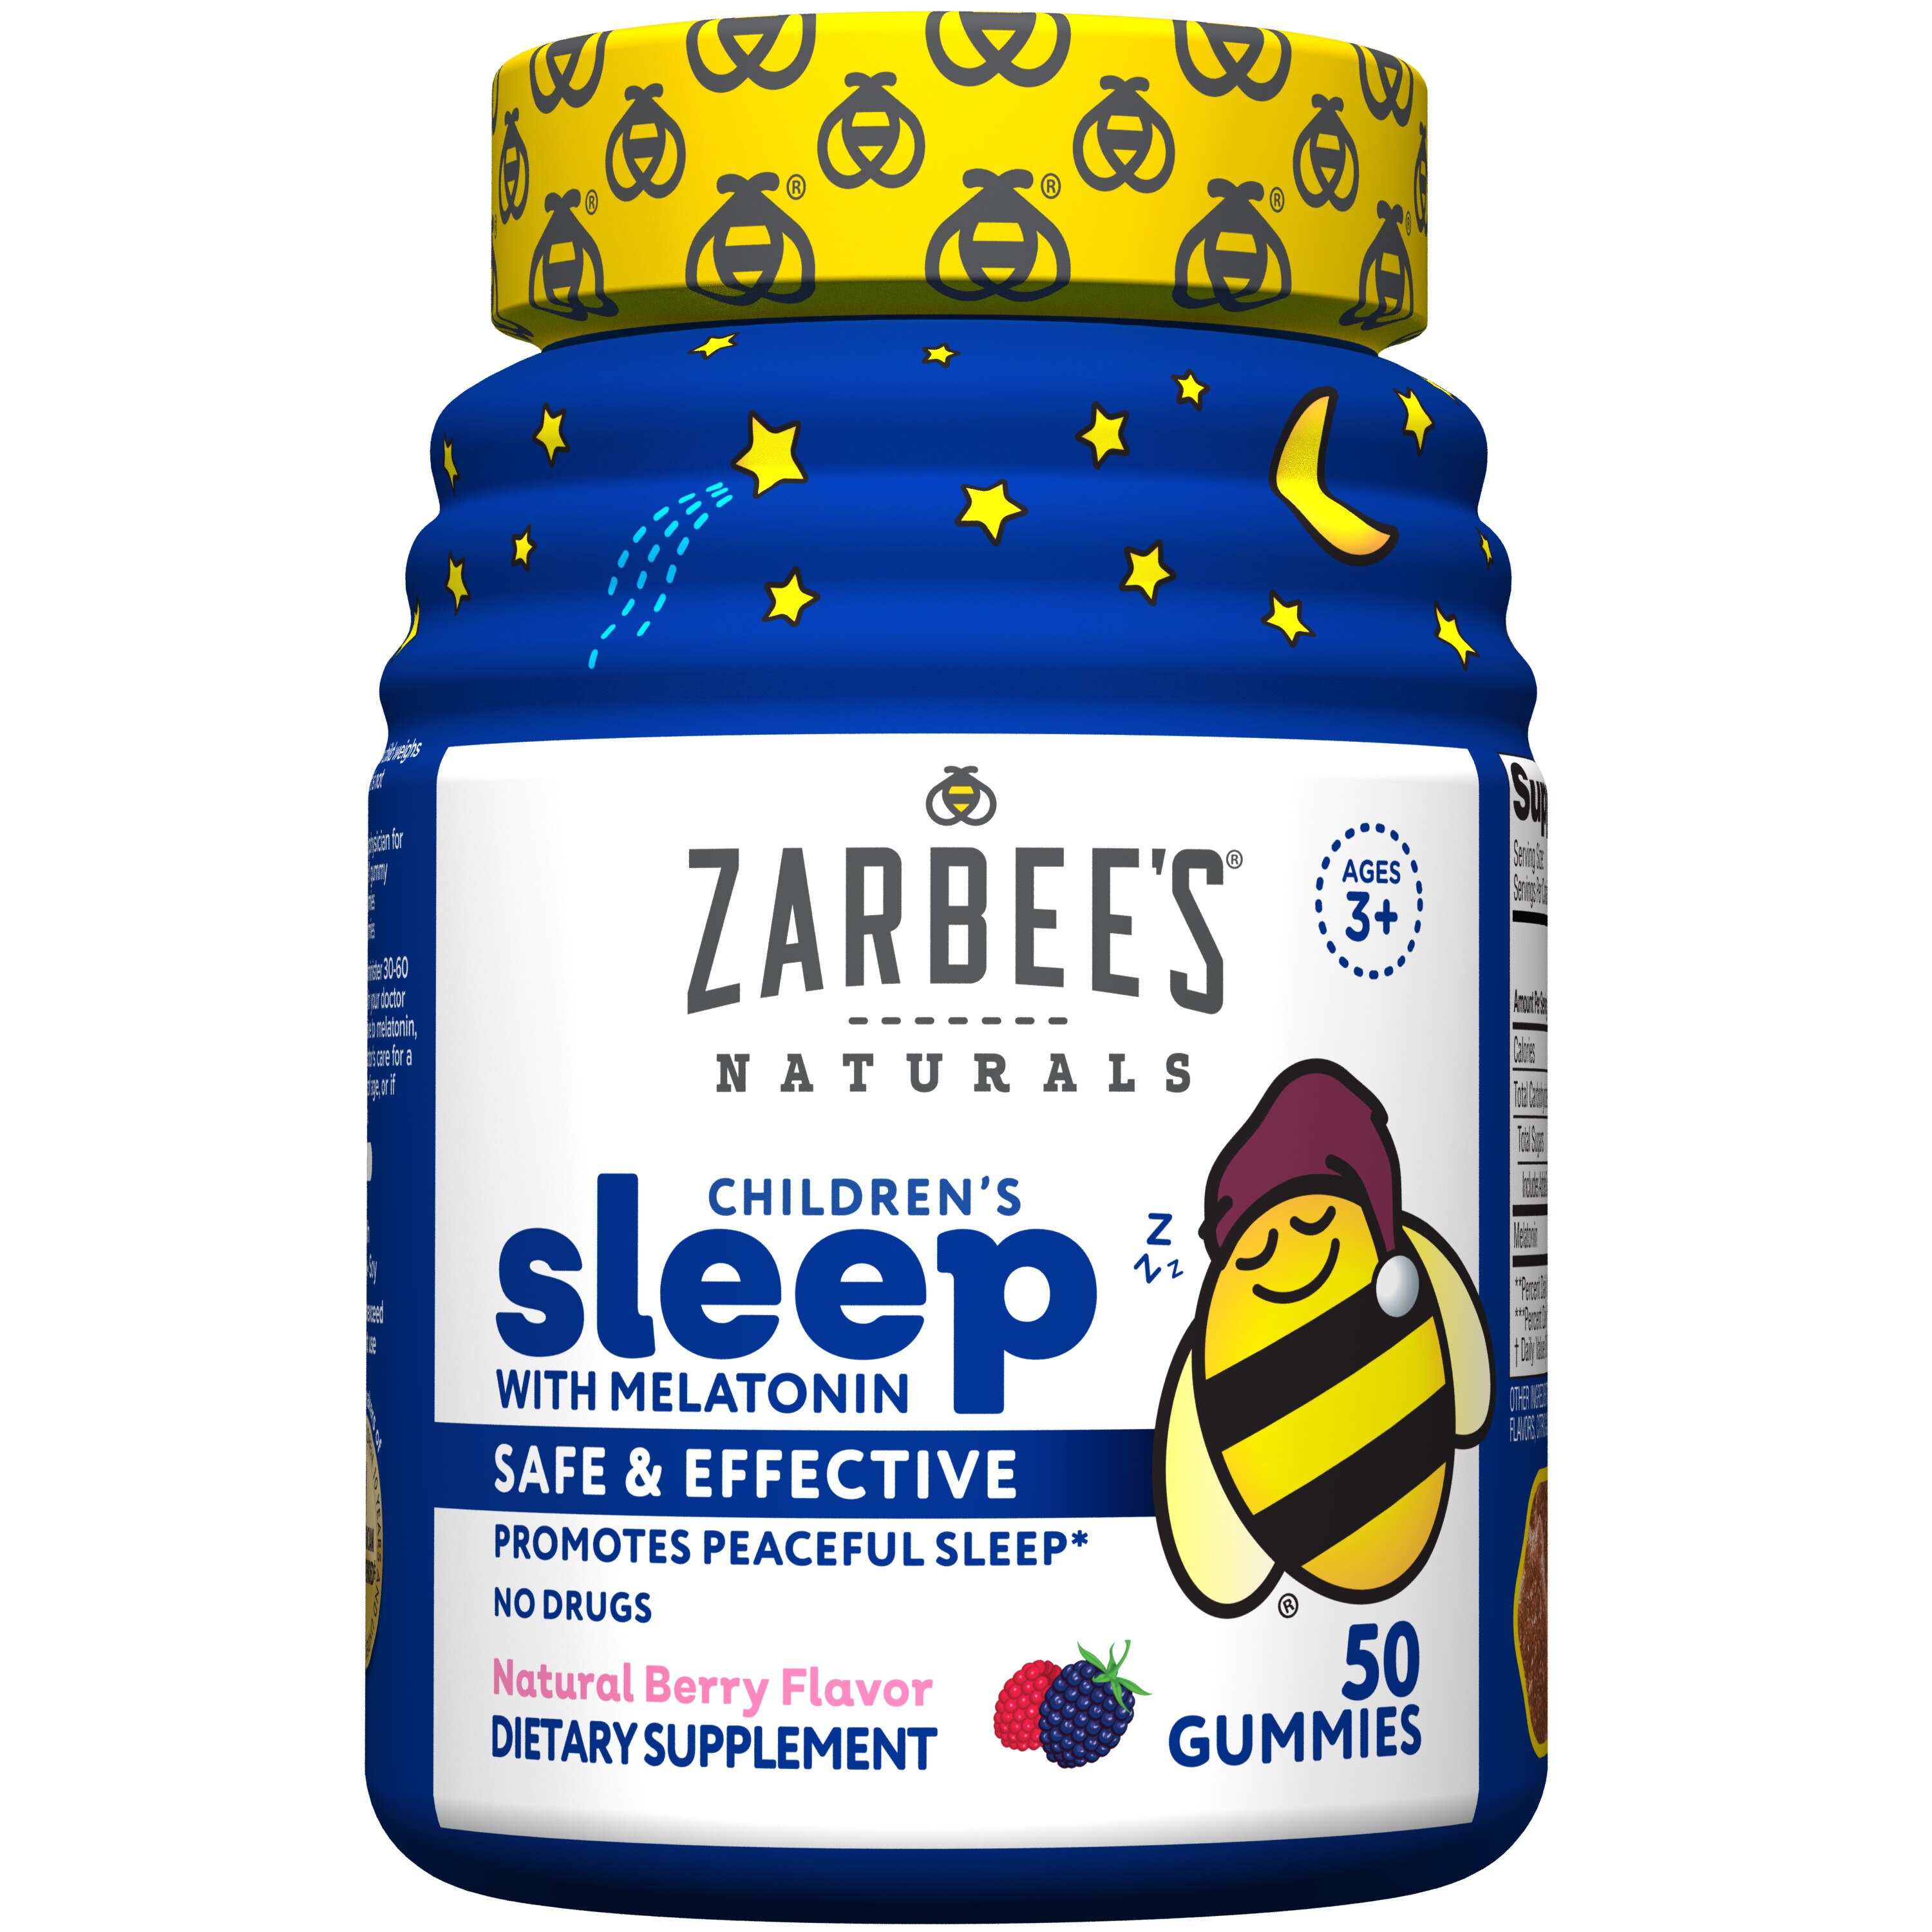 Zarbee's Naturals Children's Sleep Gummies with Melatonin, Natural Berry Flavor, 50 CT